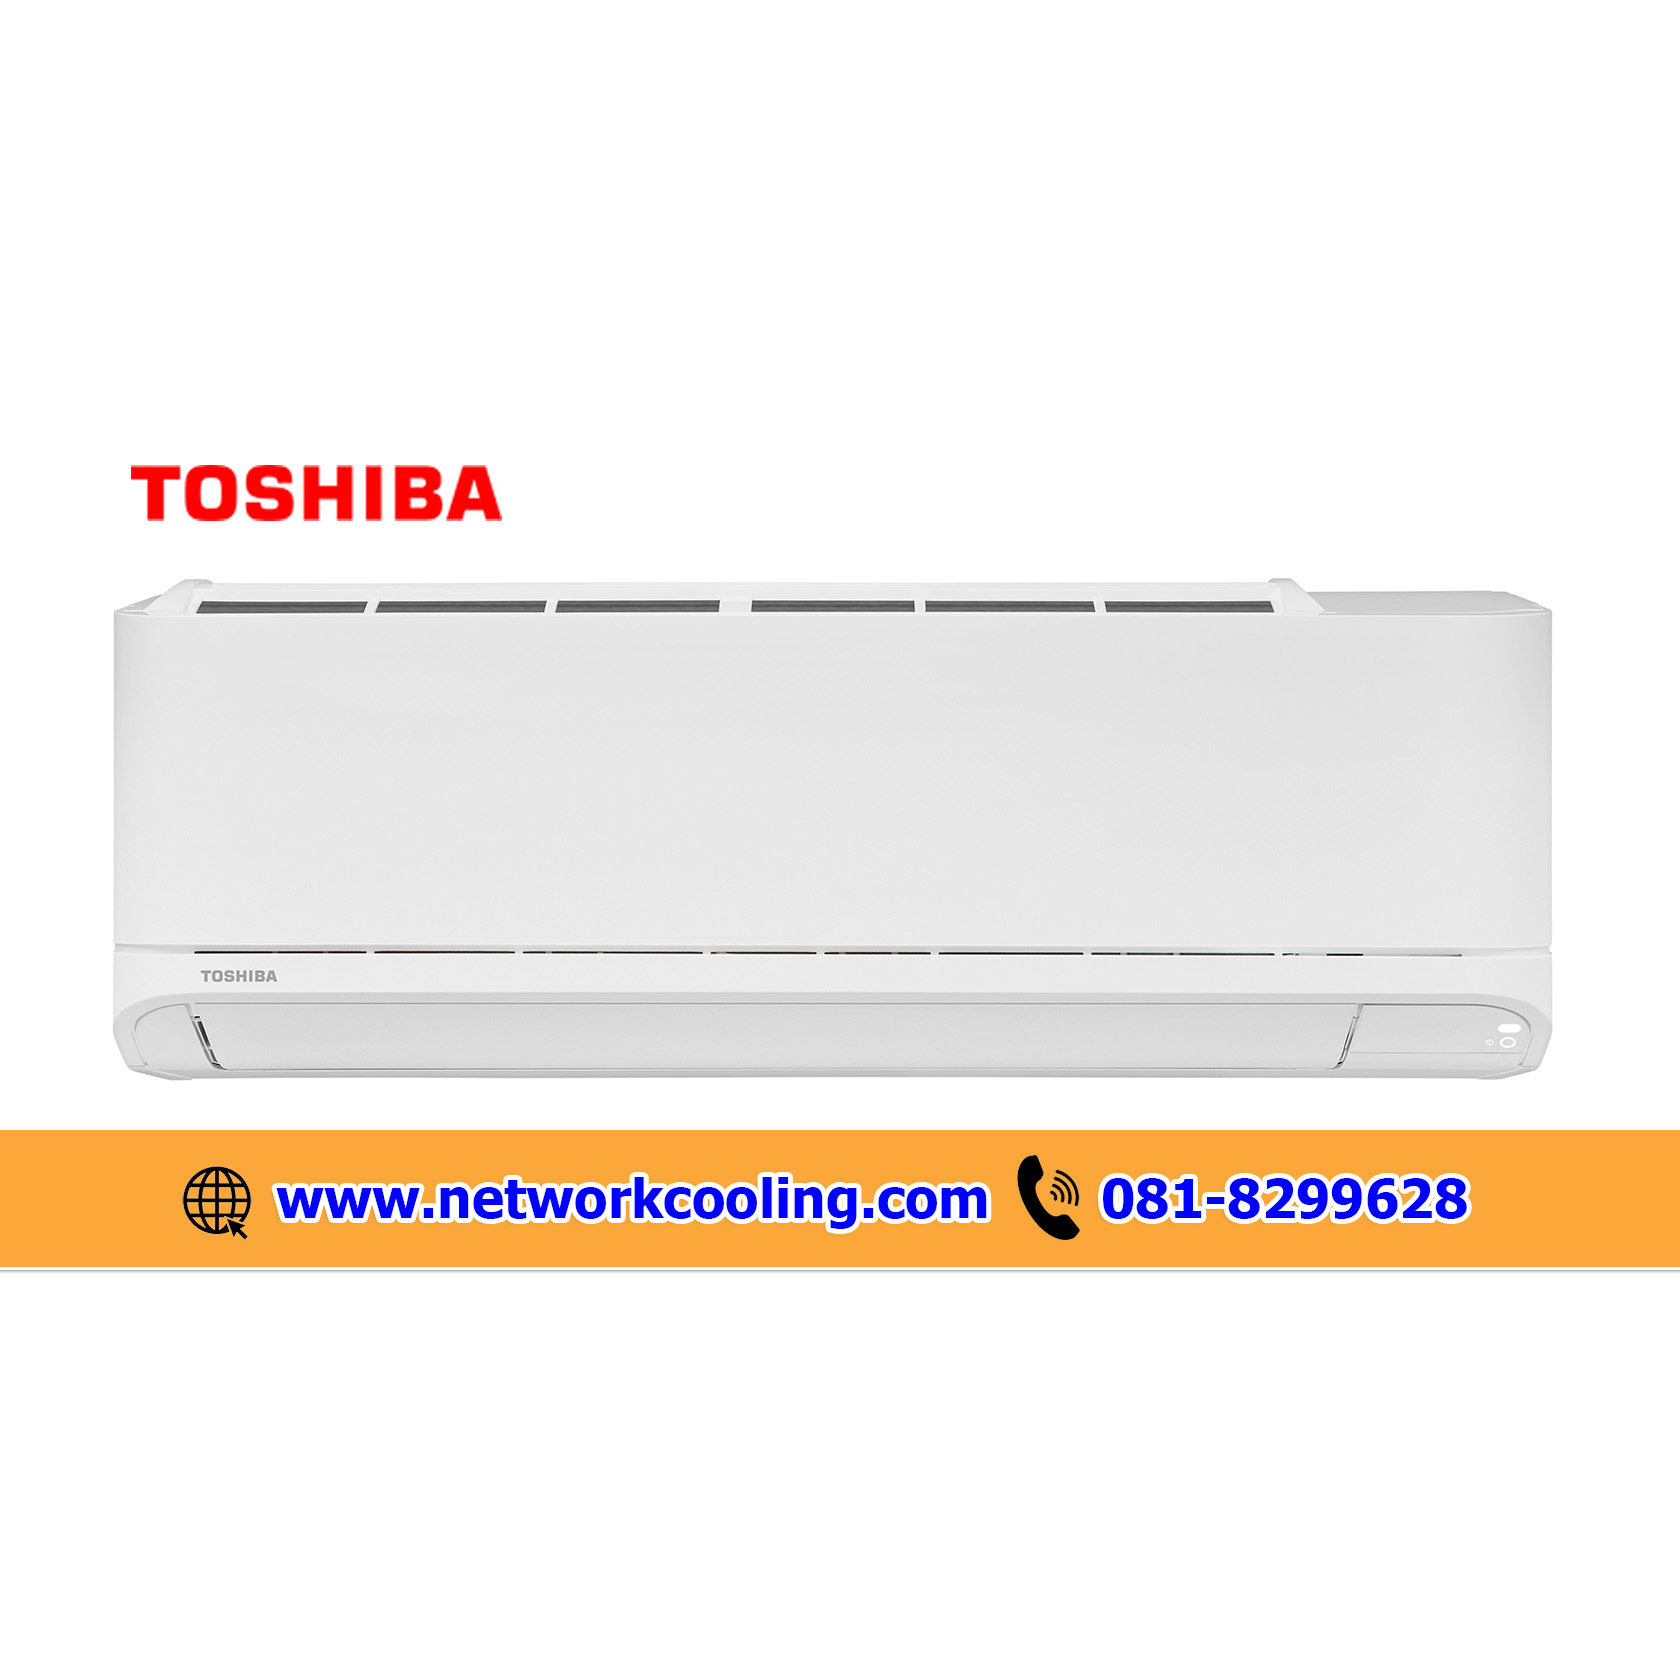 แอร์ผนังโตชิบา Toshiba Hi Wall เบอร์ 5 R32